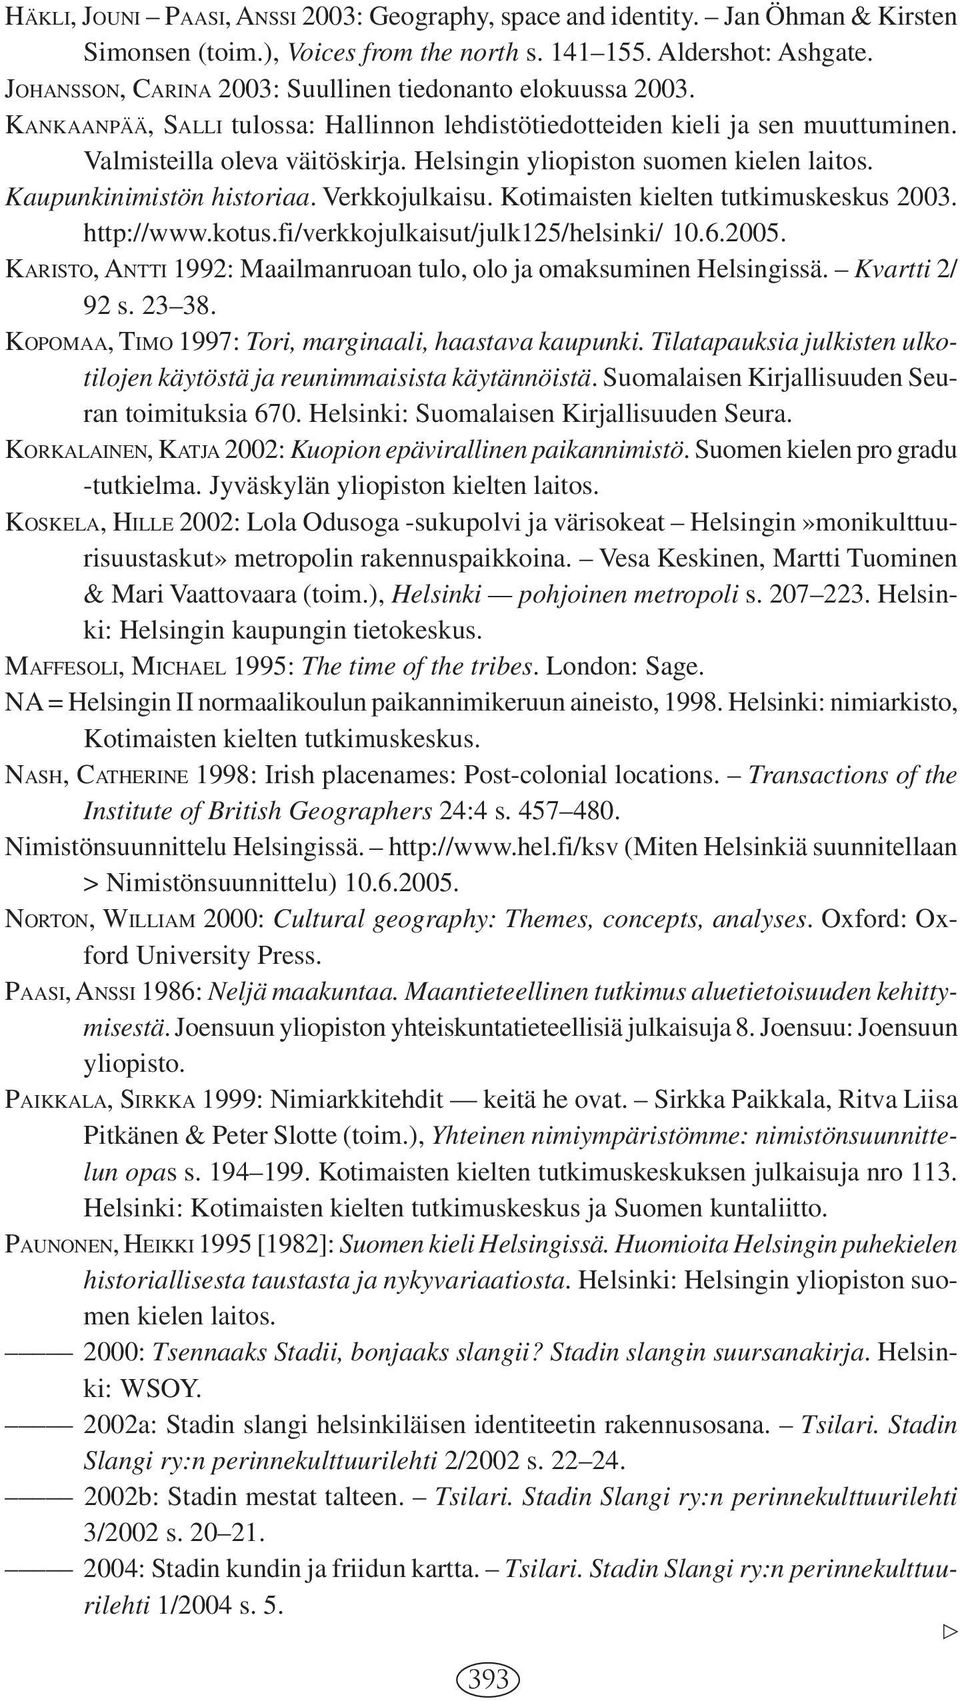 Helsingin yliopiston suomen kielen laitos. Kaupunkinimistön historiaa. Verkkojulkaisu. Kotimaisten kielten tutkimuskeskus 2003. http://www.kotus.fi/verkkojulkaisut/julk125/helsinki/ 10.6.2005.